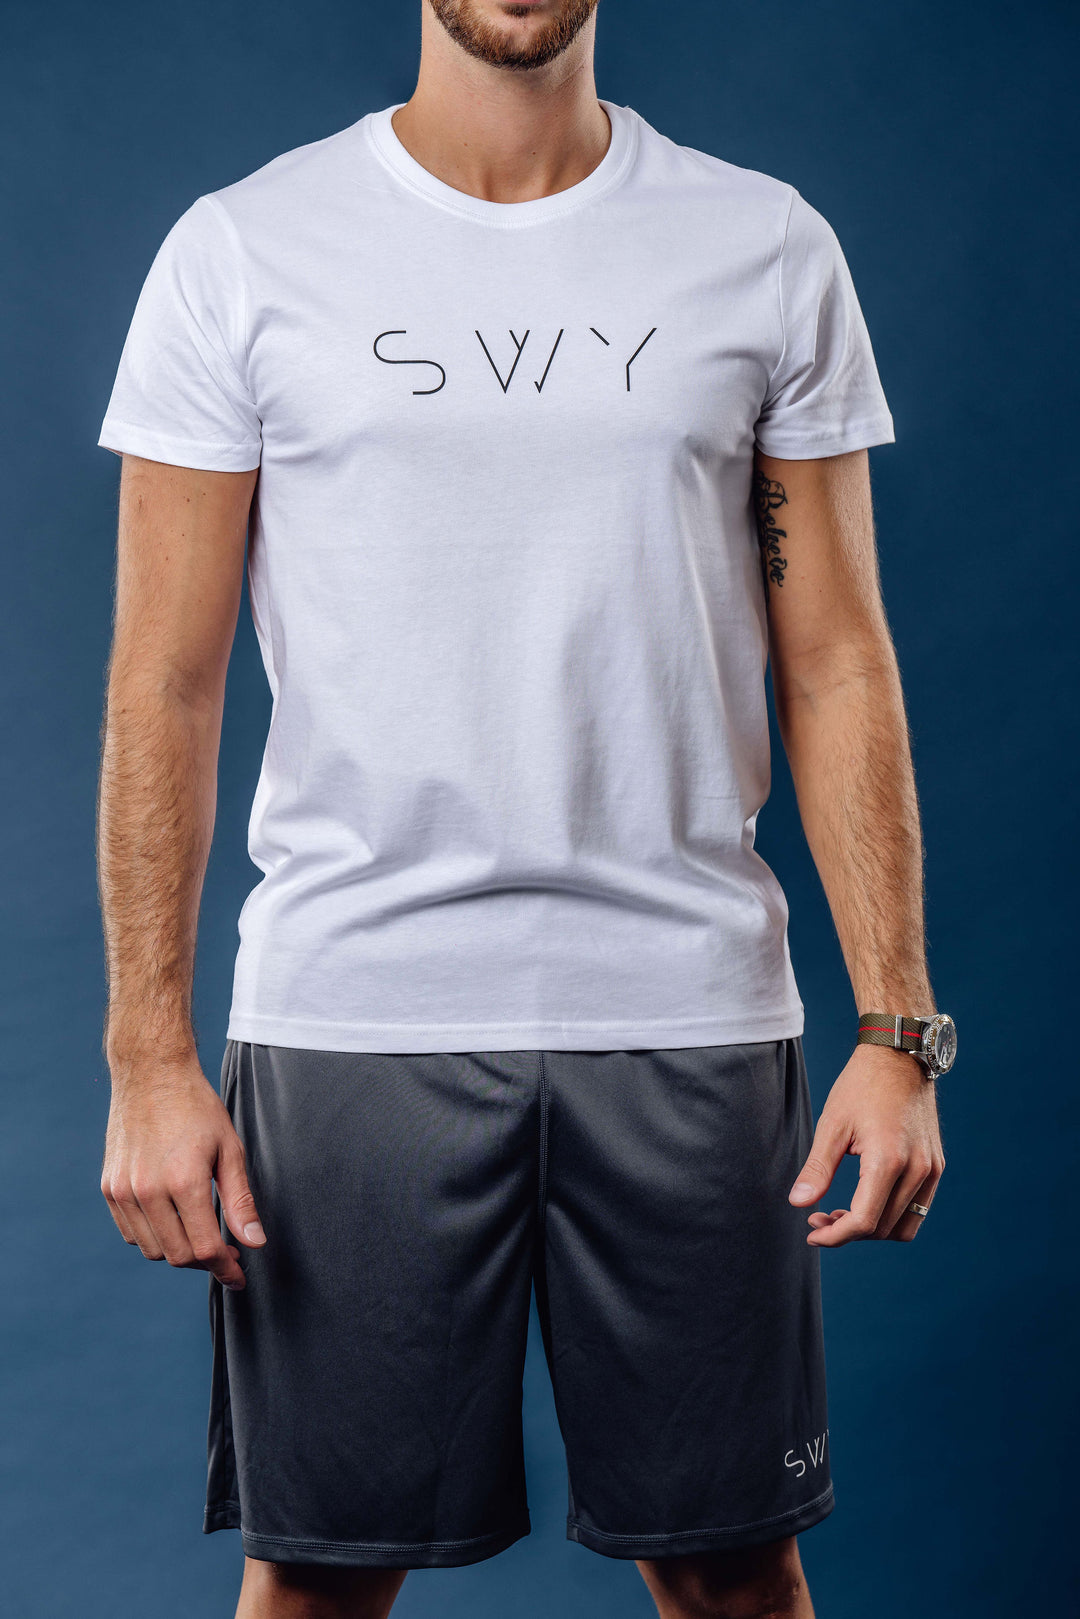 Men's promo t-shirt - black, gray or white